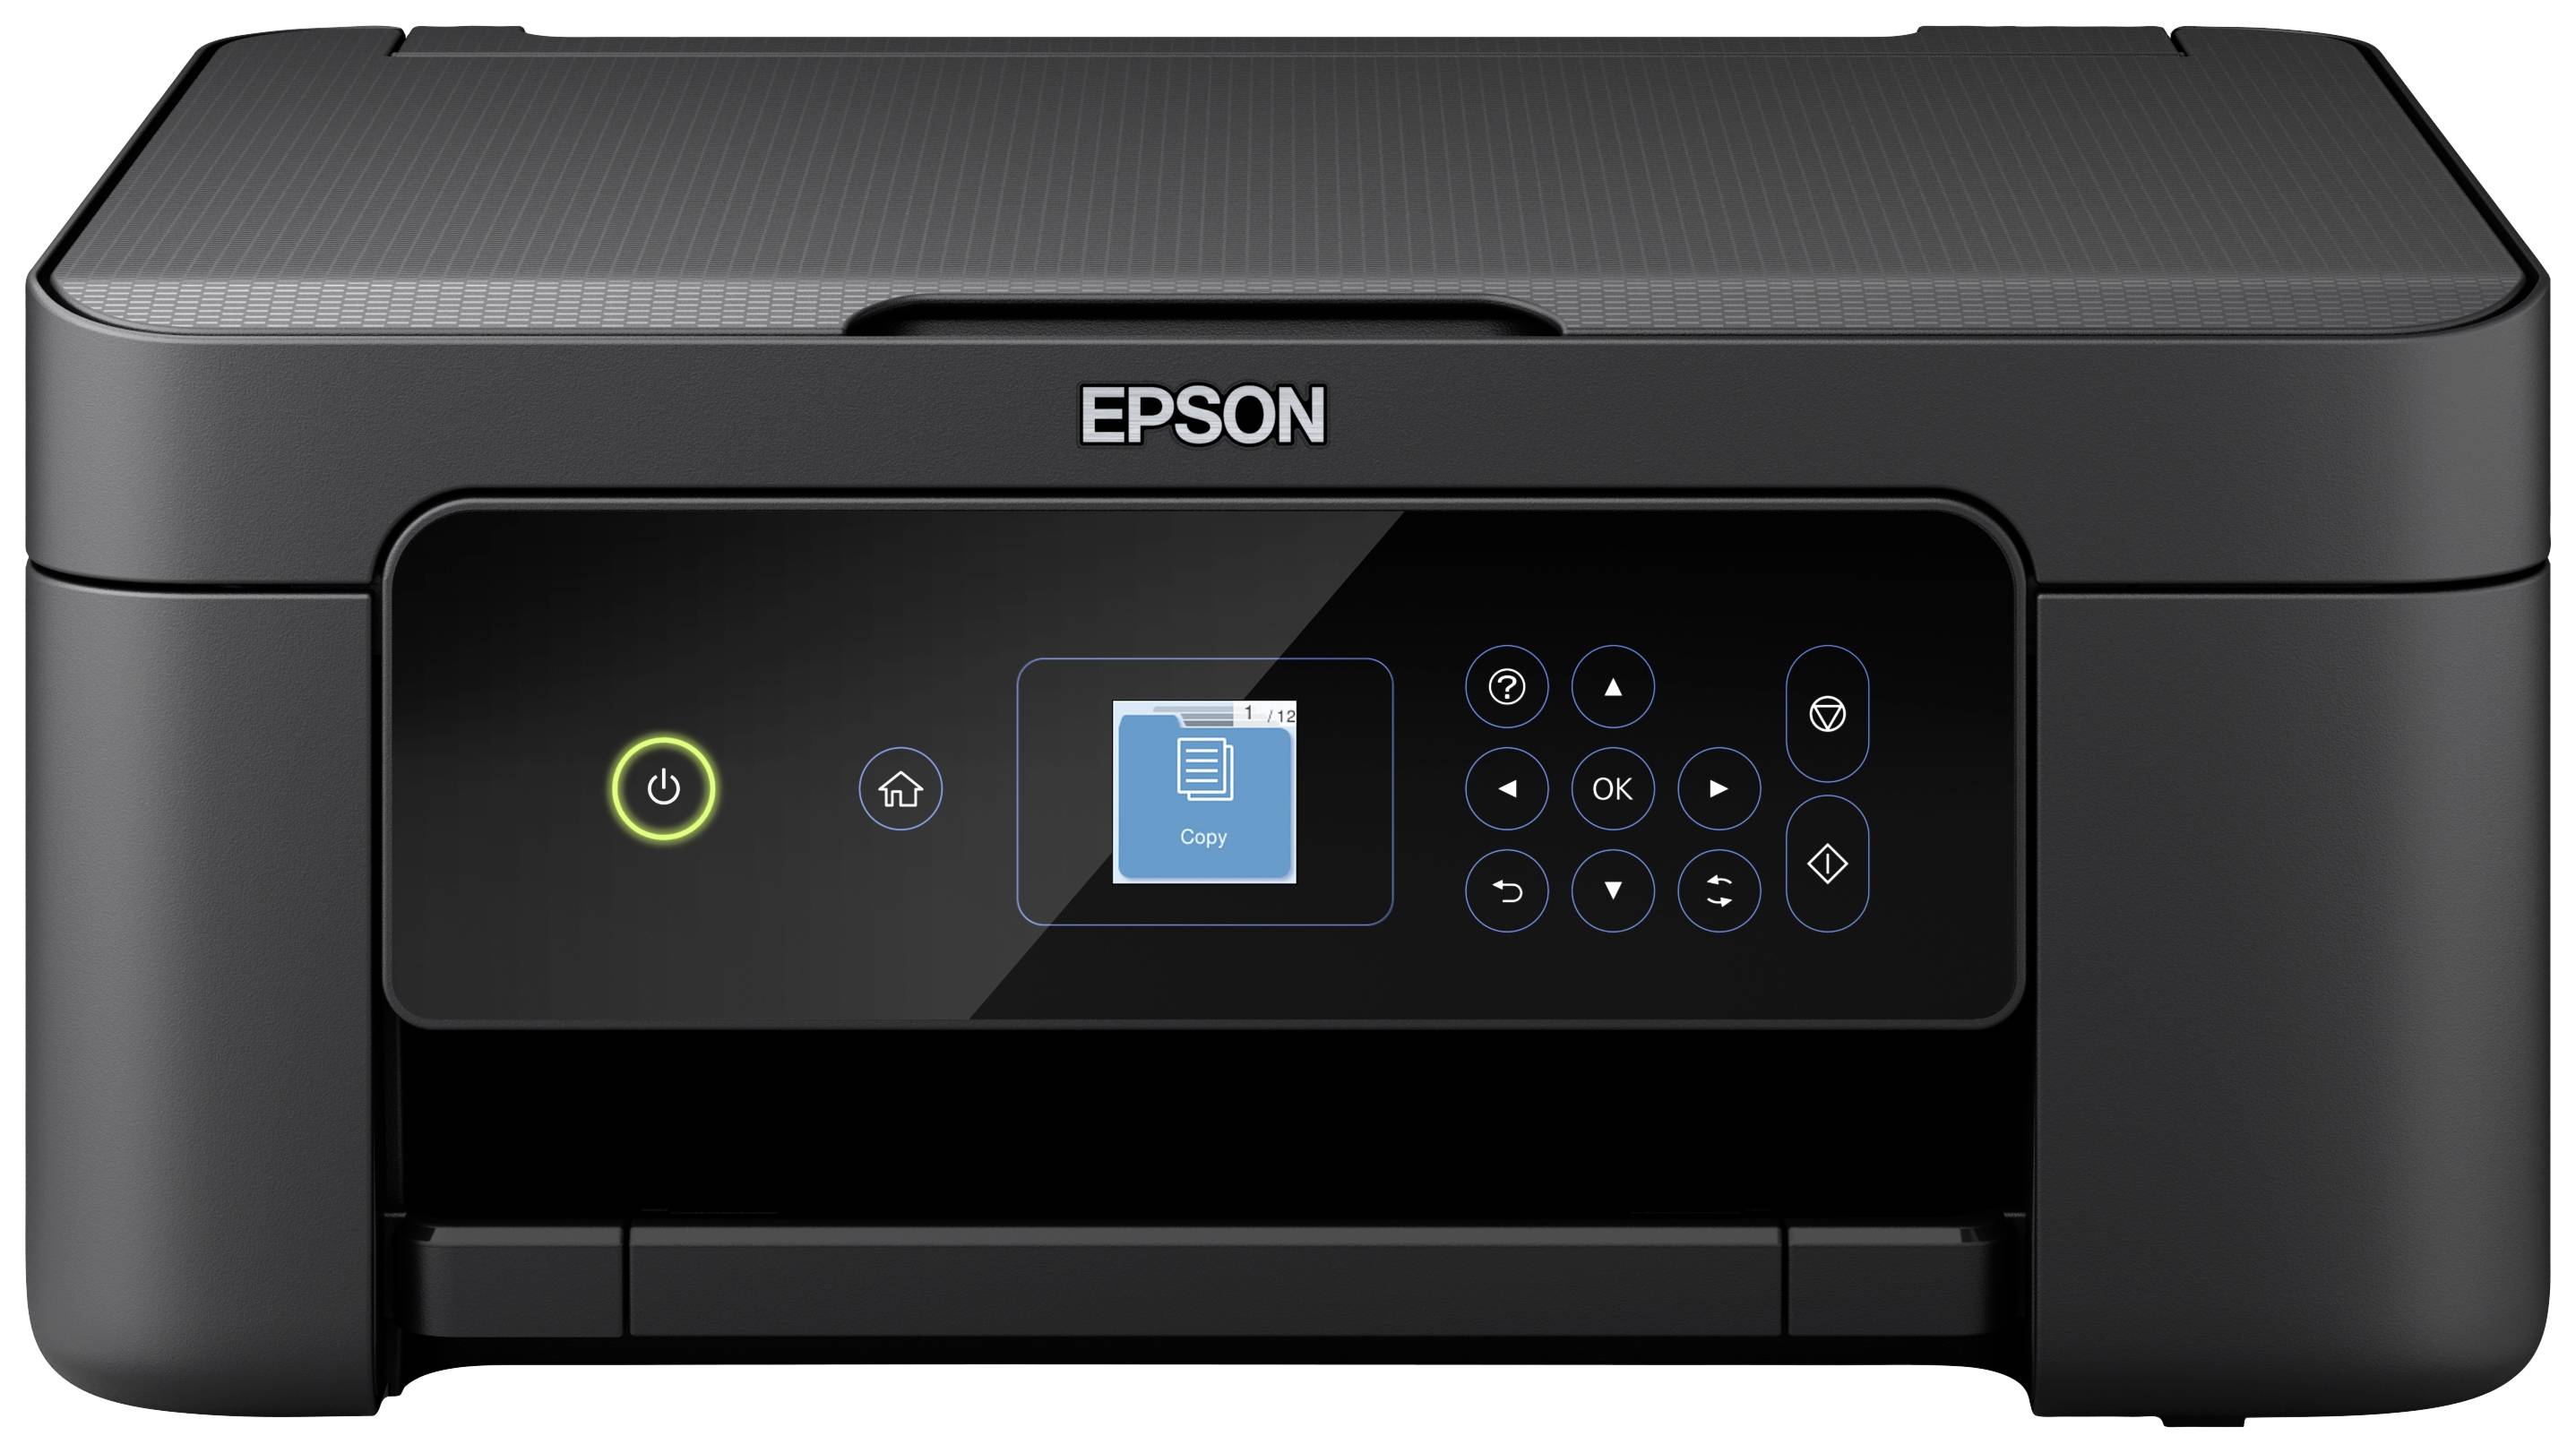 Epson Expression XP-3205 Farb kaufen Scanner, Multifunktionsdrucker Drucker, WLAN A4 Kopierer Duplex, Home Tintenstrahl USB